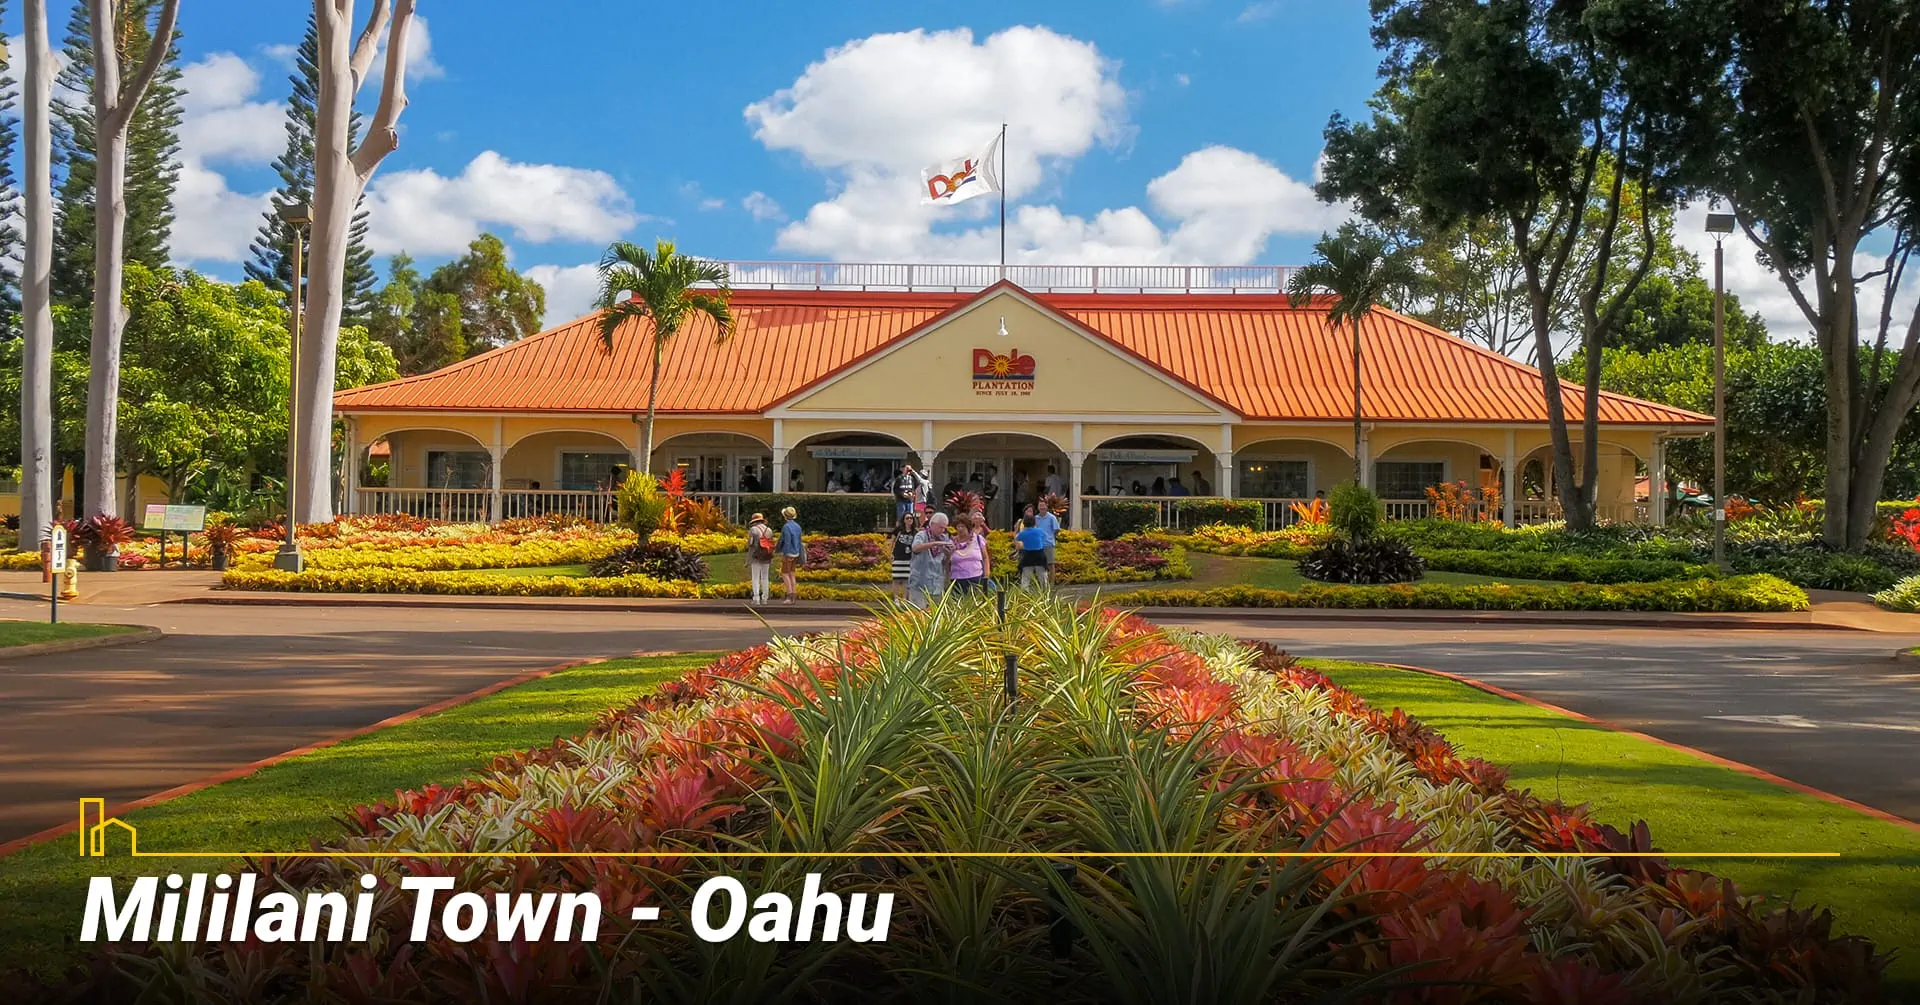 Mililani Town - Oahu